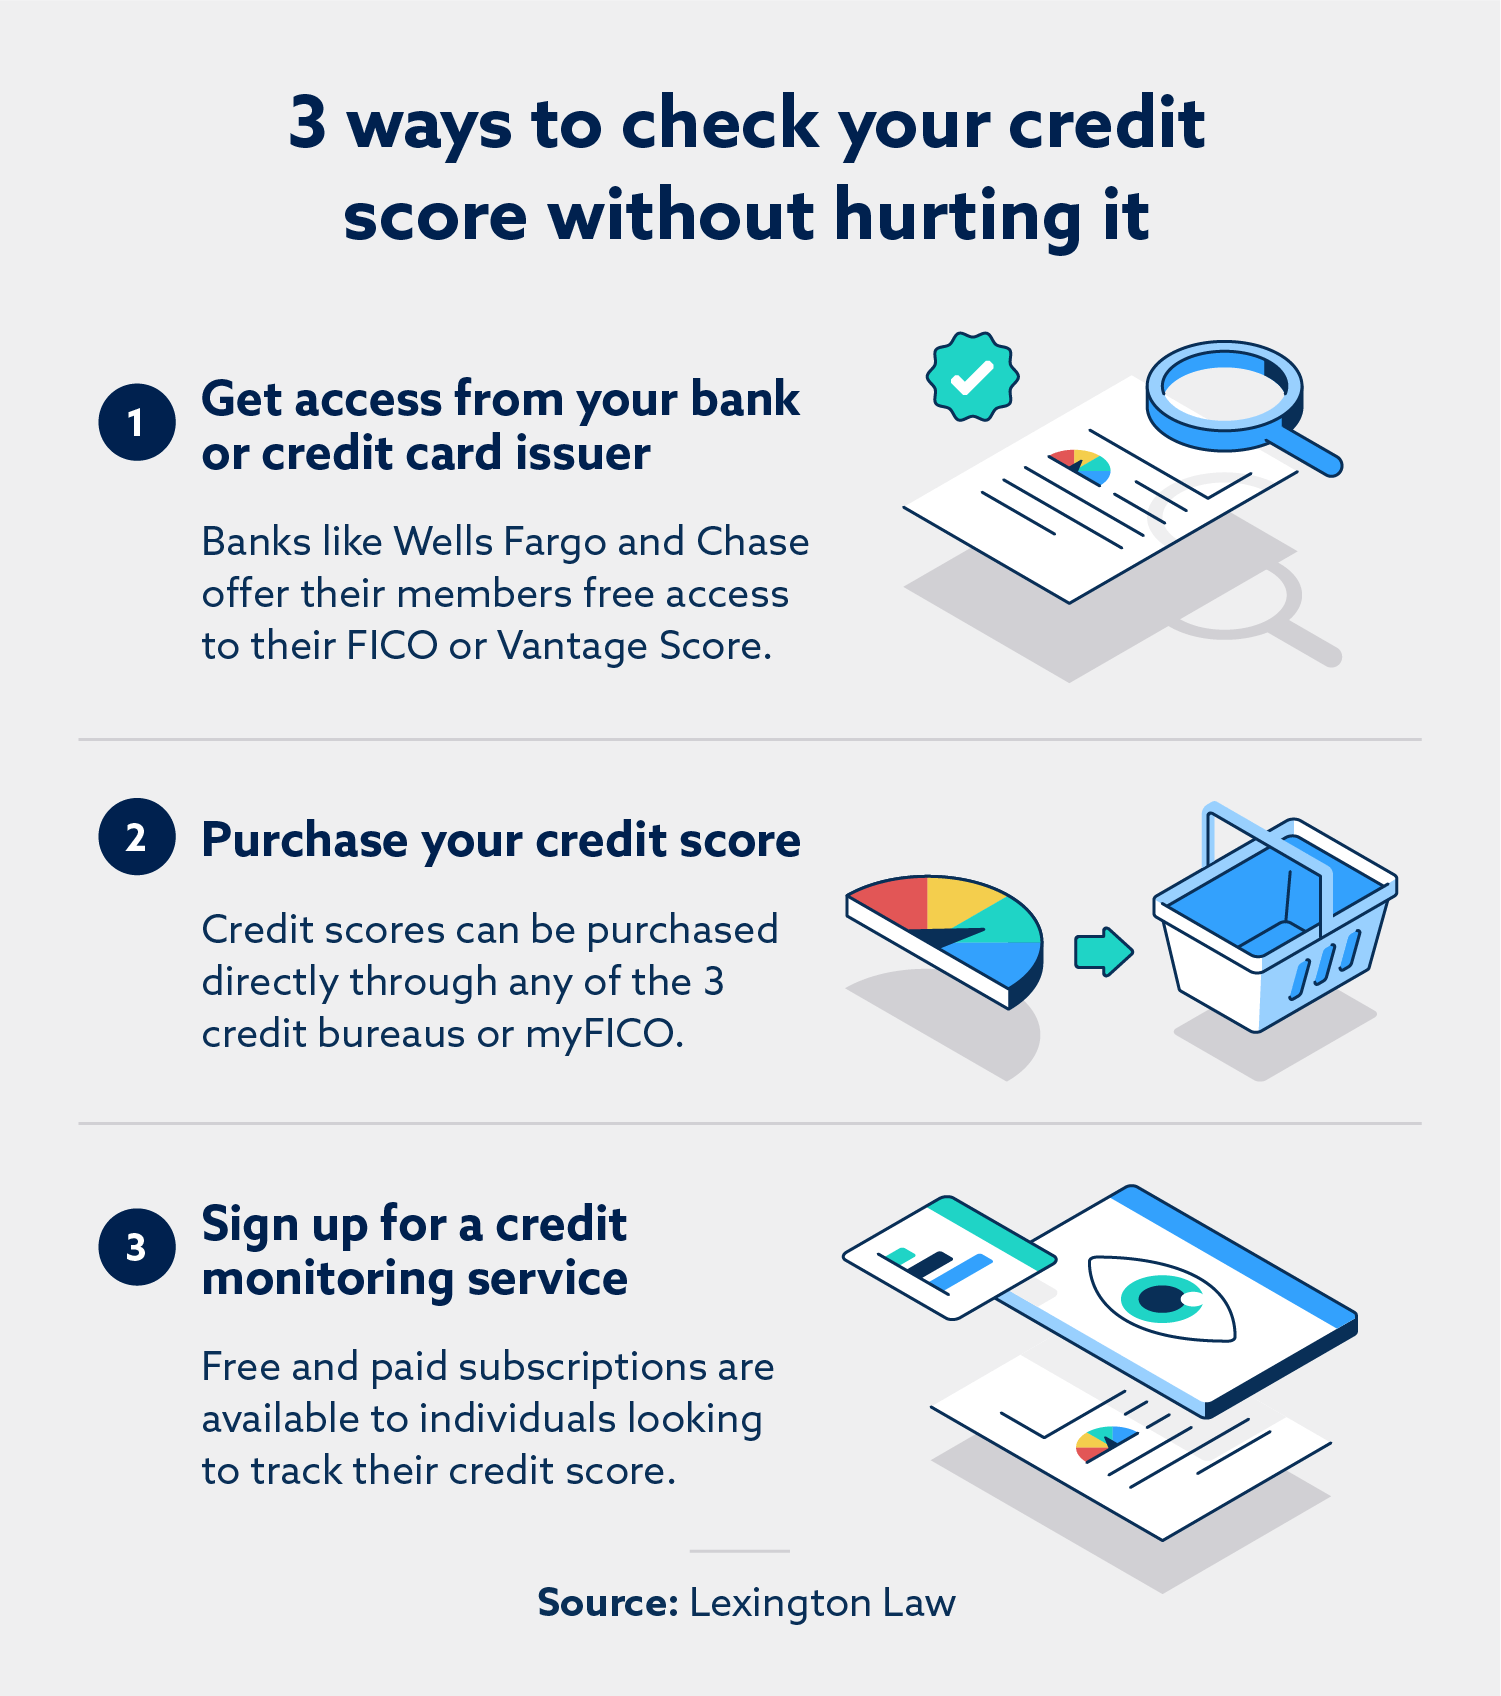 ¿Cómo puedo verificar mi puntaje de crédito sin bajarlo?